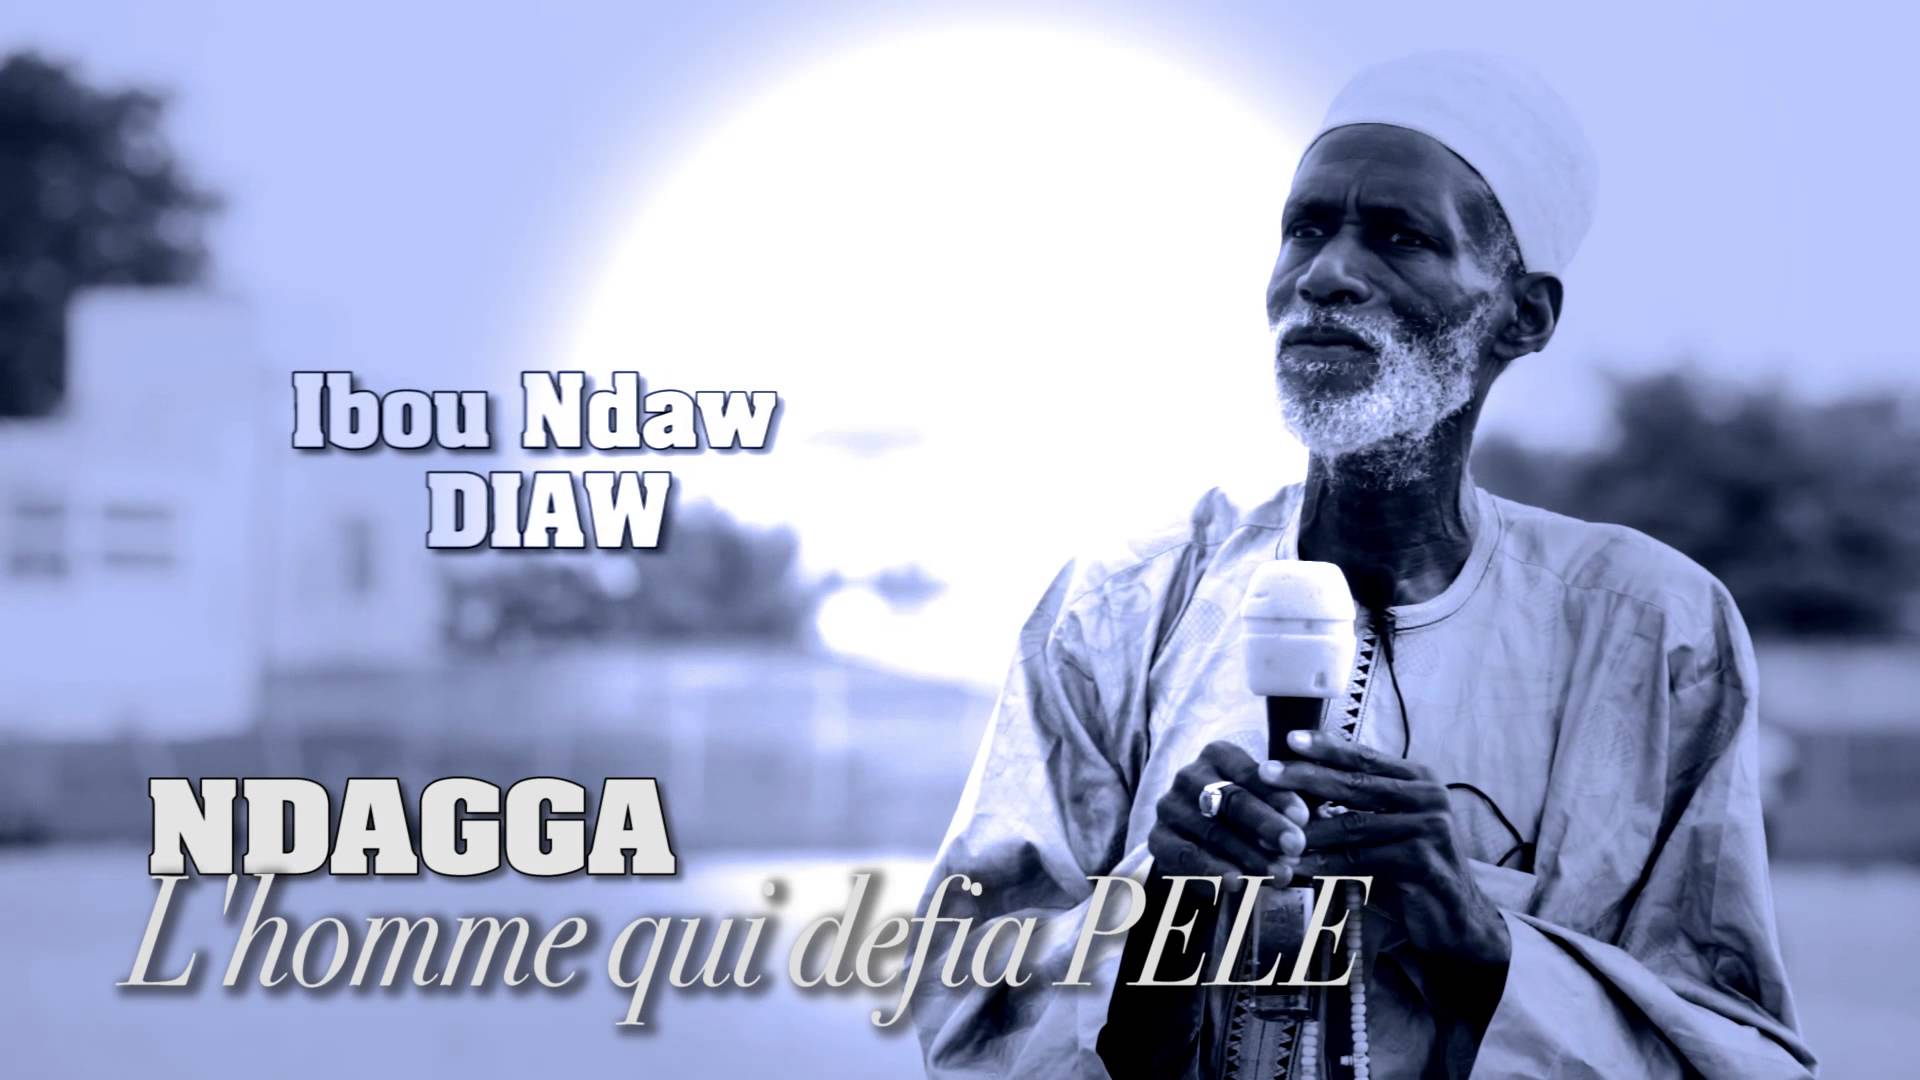 Documentaire : Ibou Ndaw Diaw Ndagga, l'homme qui défia Pelé